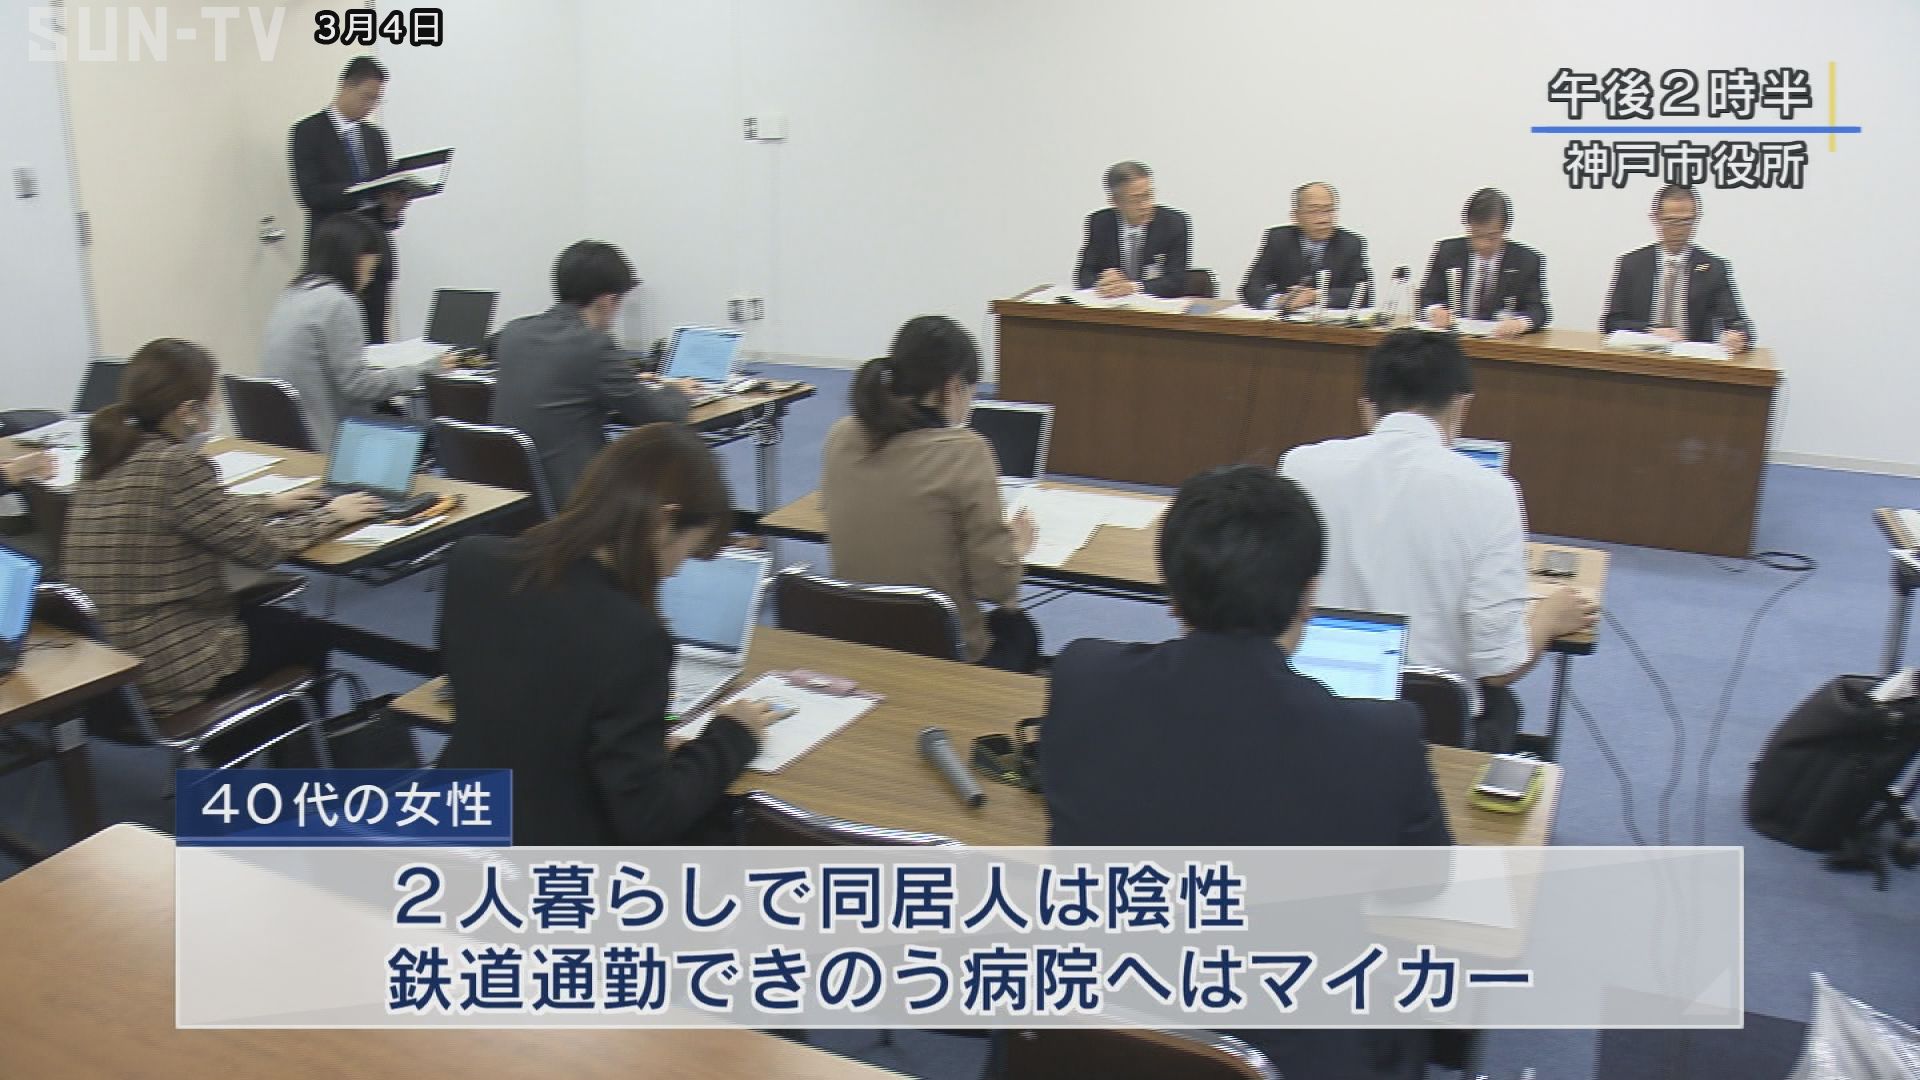 神戸市で2人の新型コロナ感染を確認 専門窓口で相談受付 サンテレビニュース